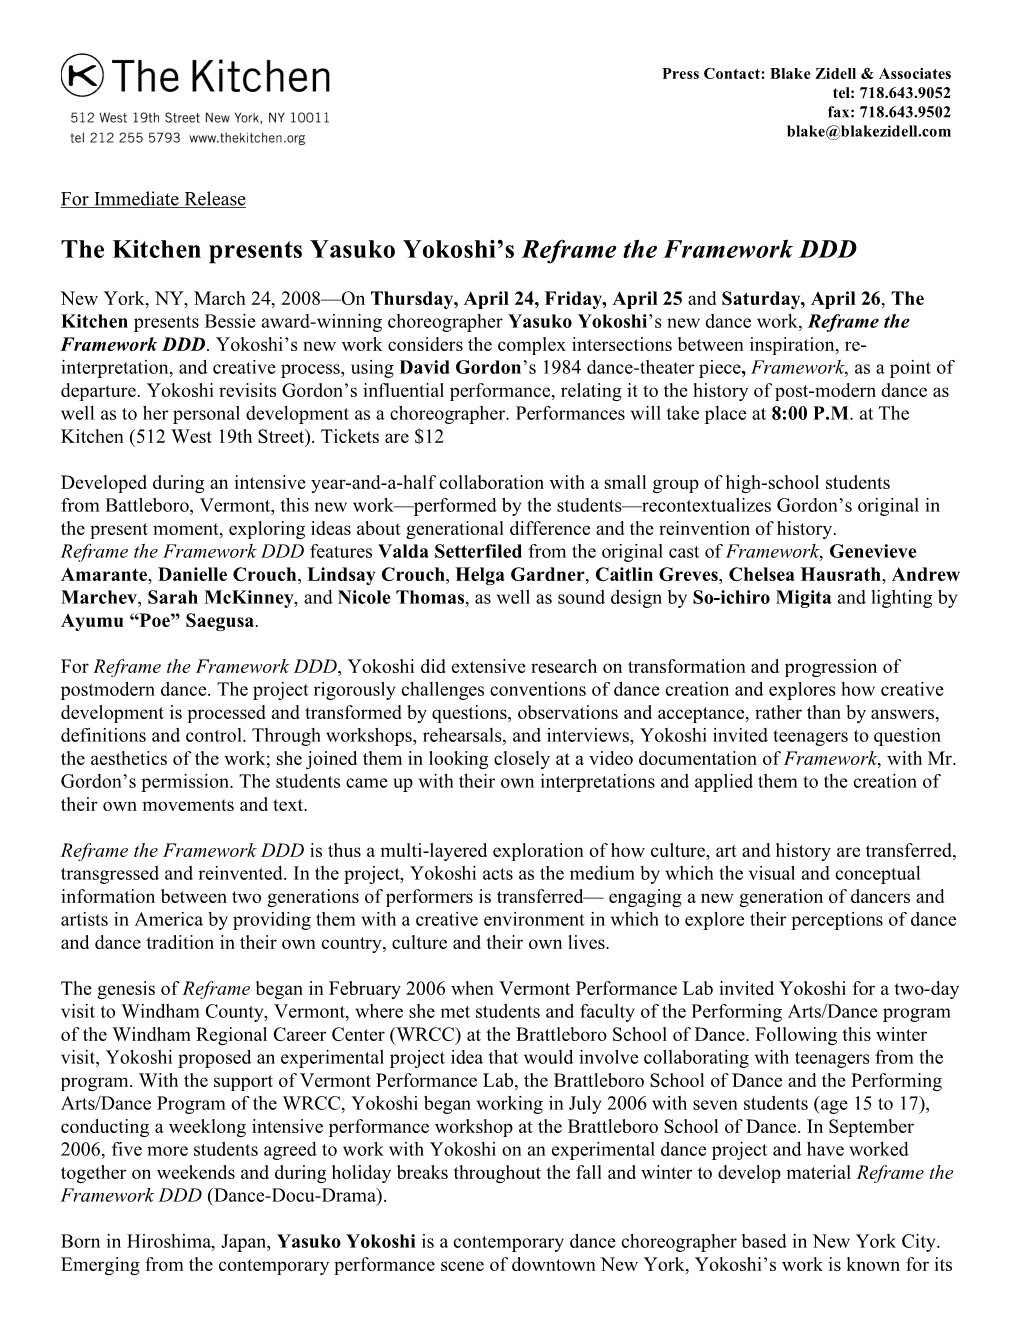 The Kitchen Presents Yasuko Yokoshi's Reframe the Framework